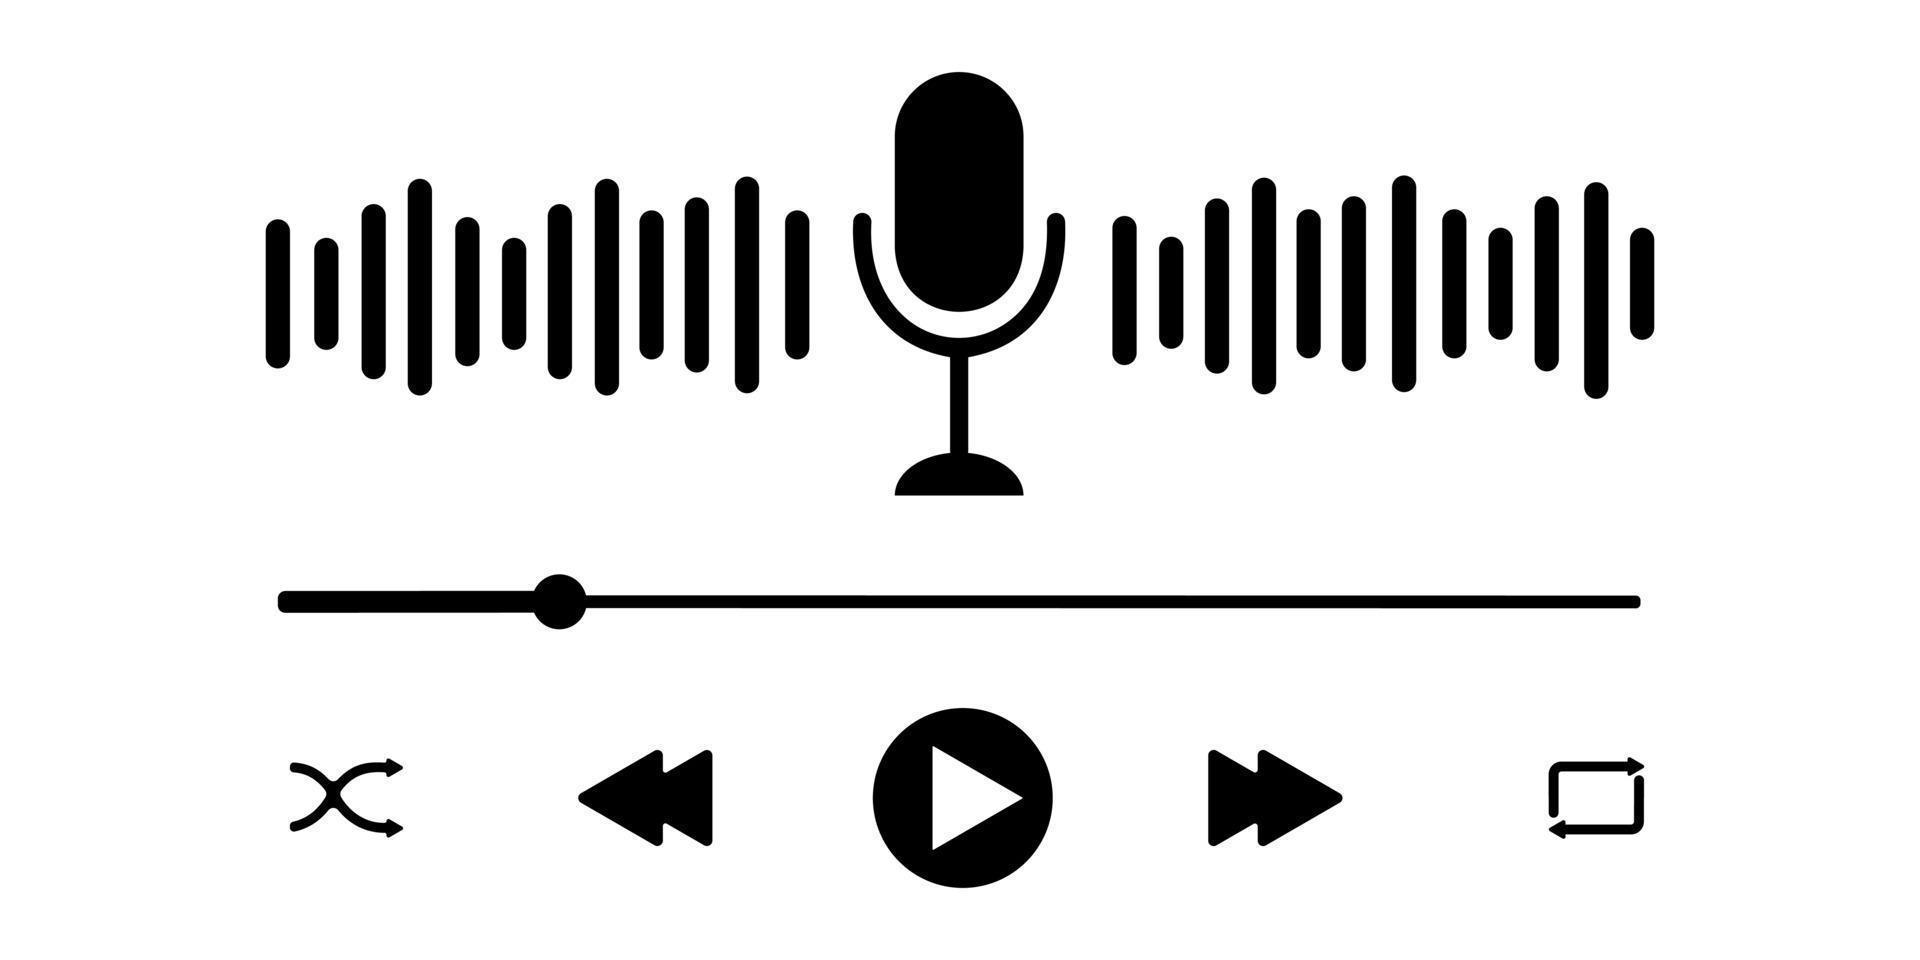 Podcast giocatore interfaccia con microfono, suono onda, Caricamento in corso progresso bar e pulsanti. semplice Audio giocatore pannello modello per mobile App vettore